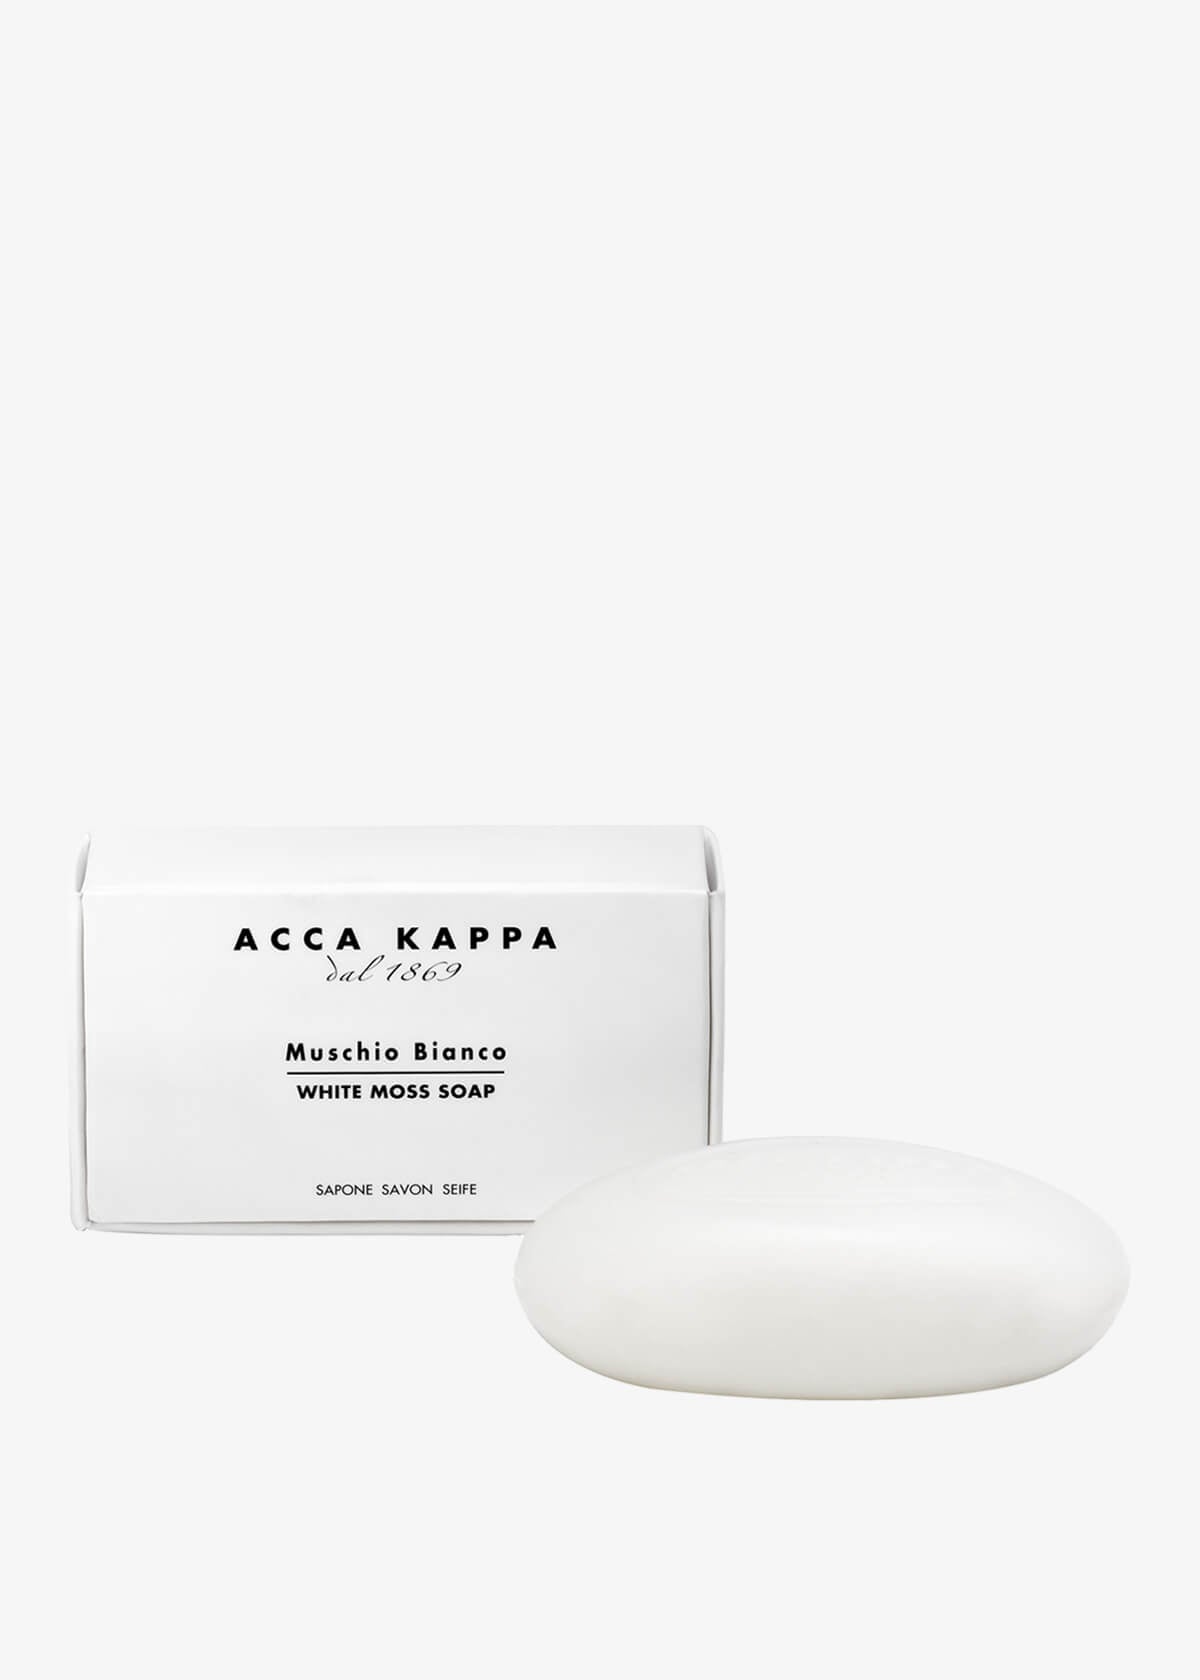 Acca Kappa White Moss Soap Körperseife – huehne.shop